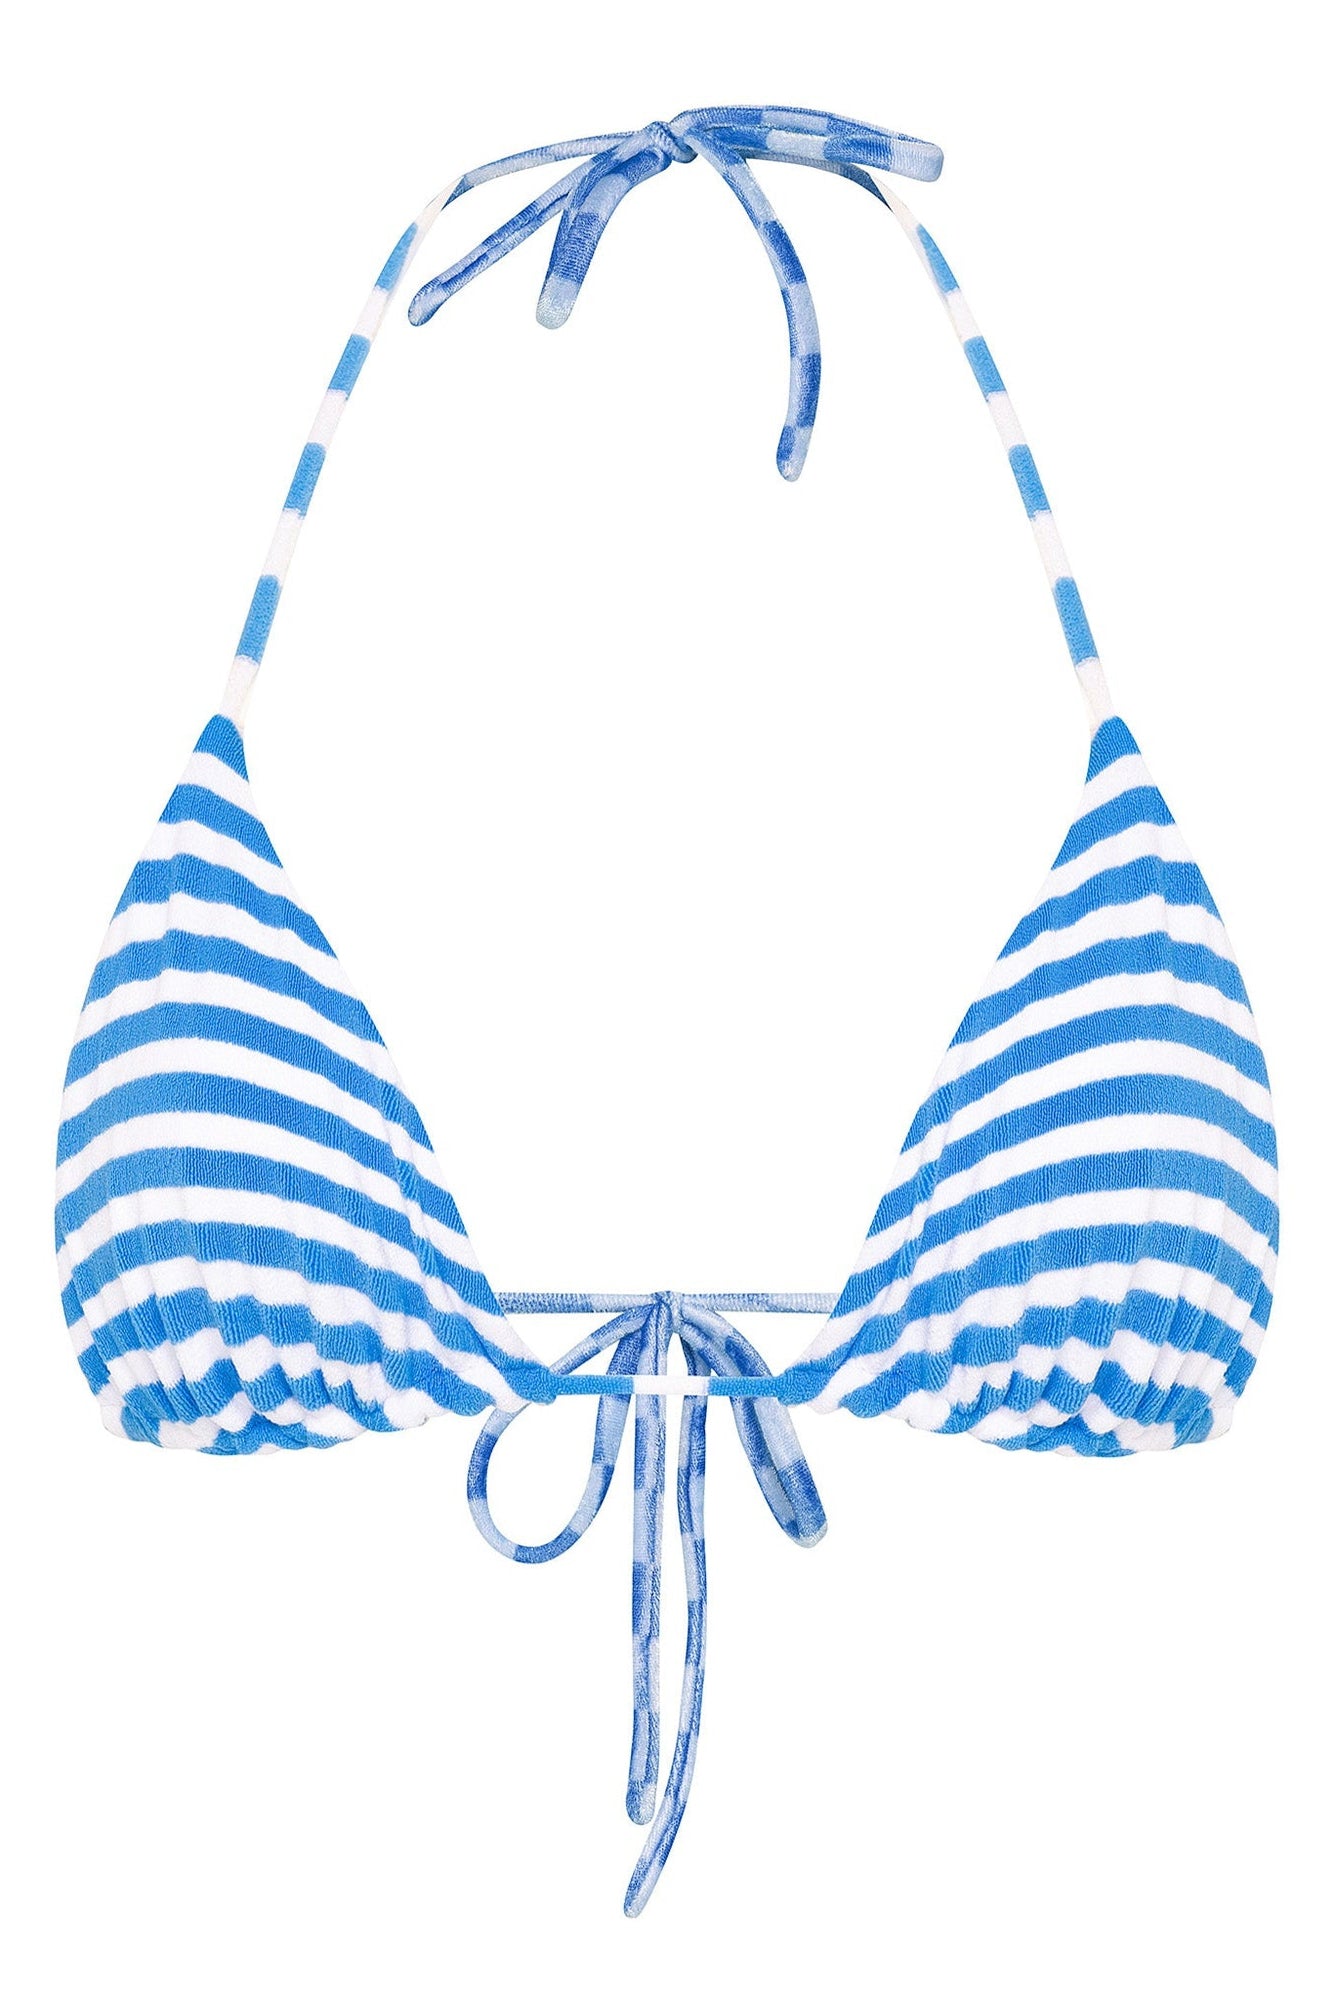 terry cloth triangle bikini